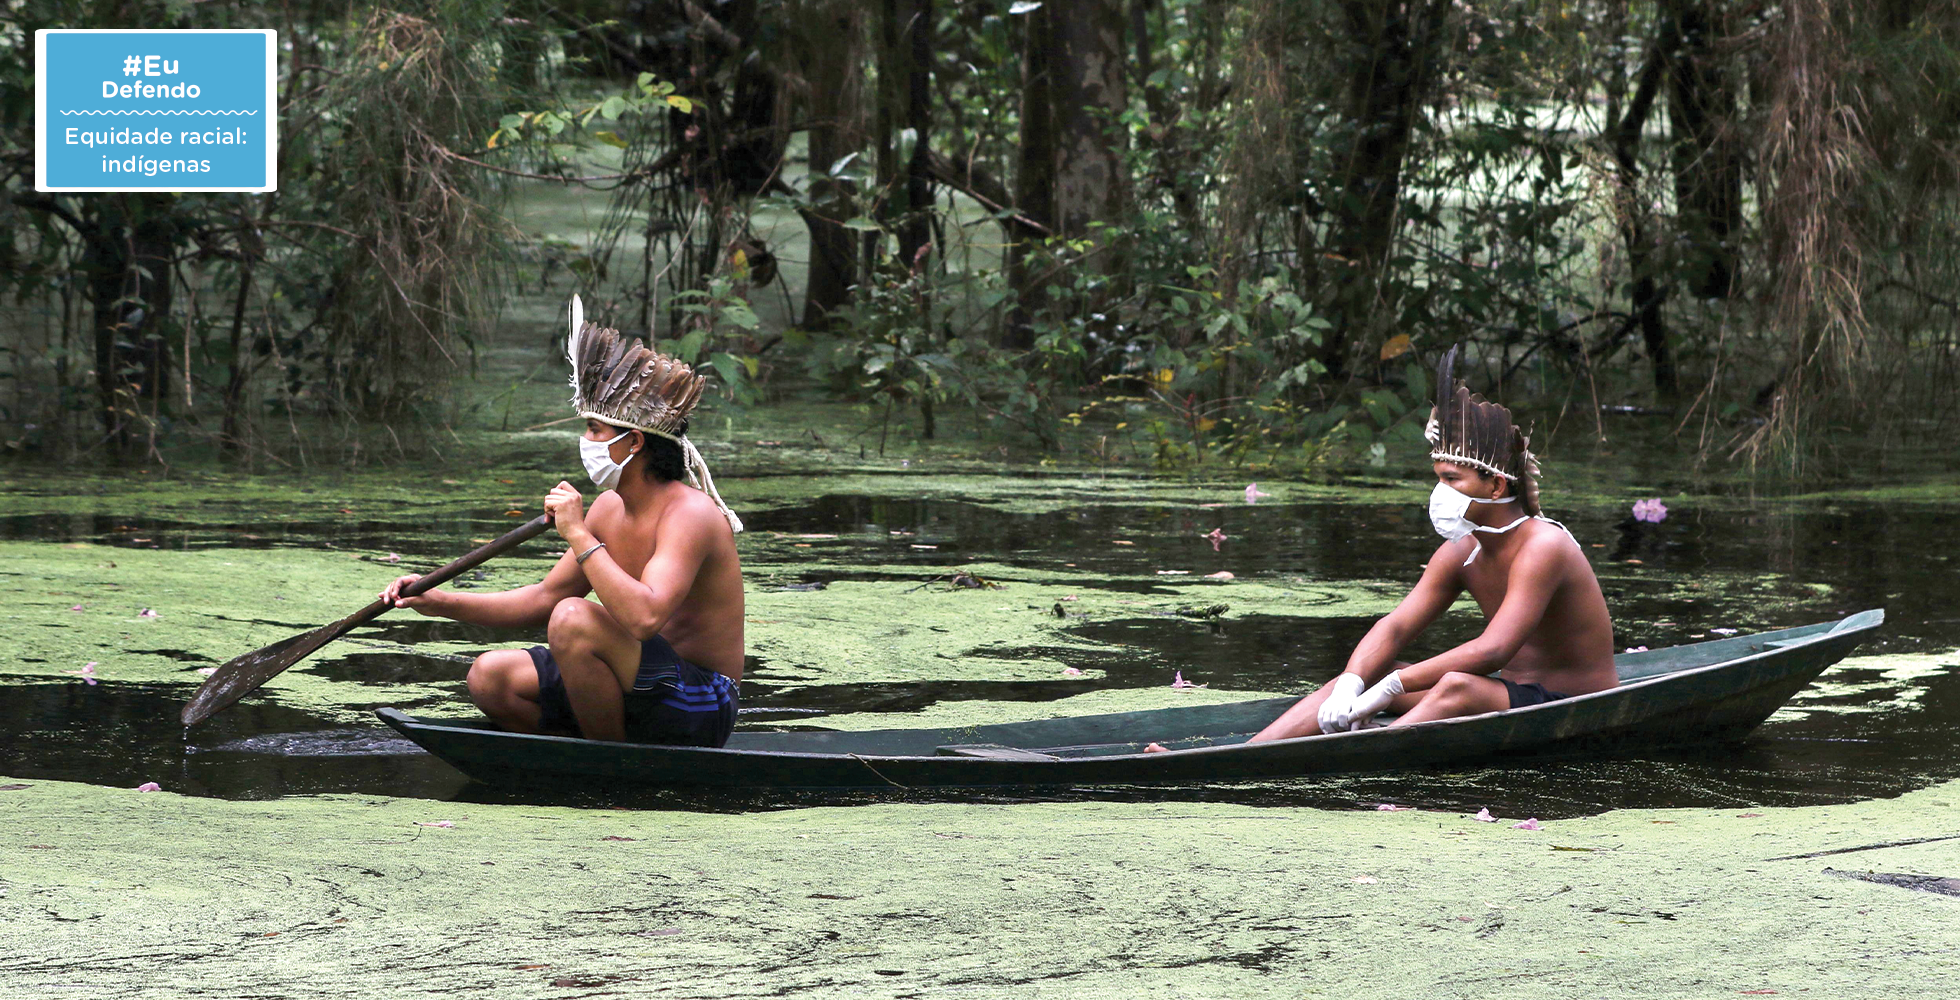 Os povos indígenas no Brasil vivem um momento crítico, cercados de ameaças à sua saúde, cultura e territórios. Veja como se juntar a essa luta urgente (Foto: Ricardo Oliveira/Getty Images)